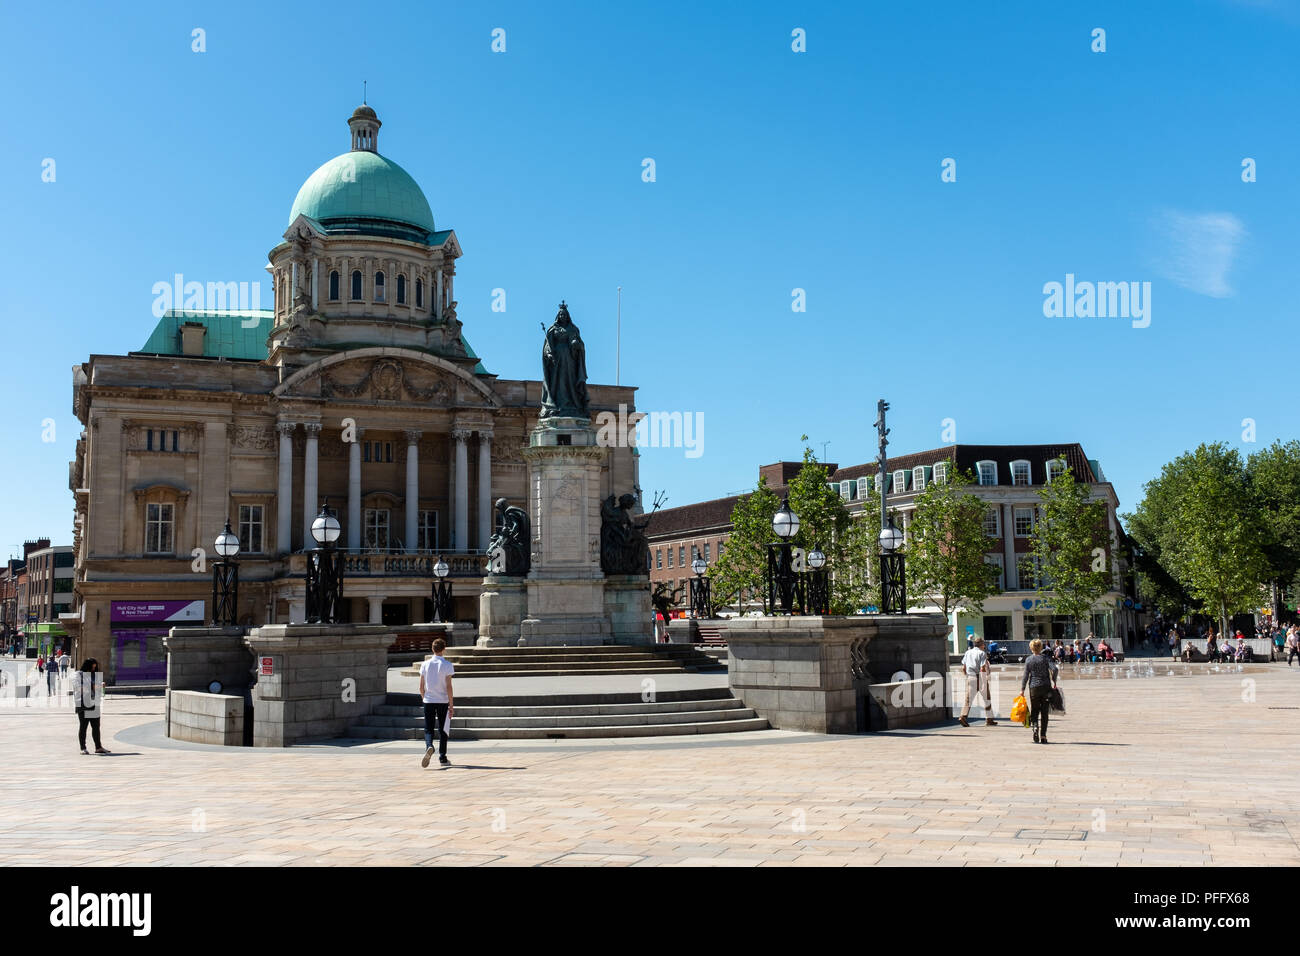 Image de Kingston Upon Hull UK City of Culture 2017. L'Hôtel de Ville de Hull contre un ciel bleu en été. La reine Victoria Square avec les gens de passage. Banque D'Images